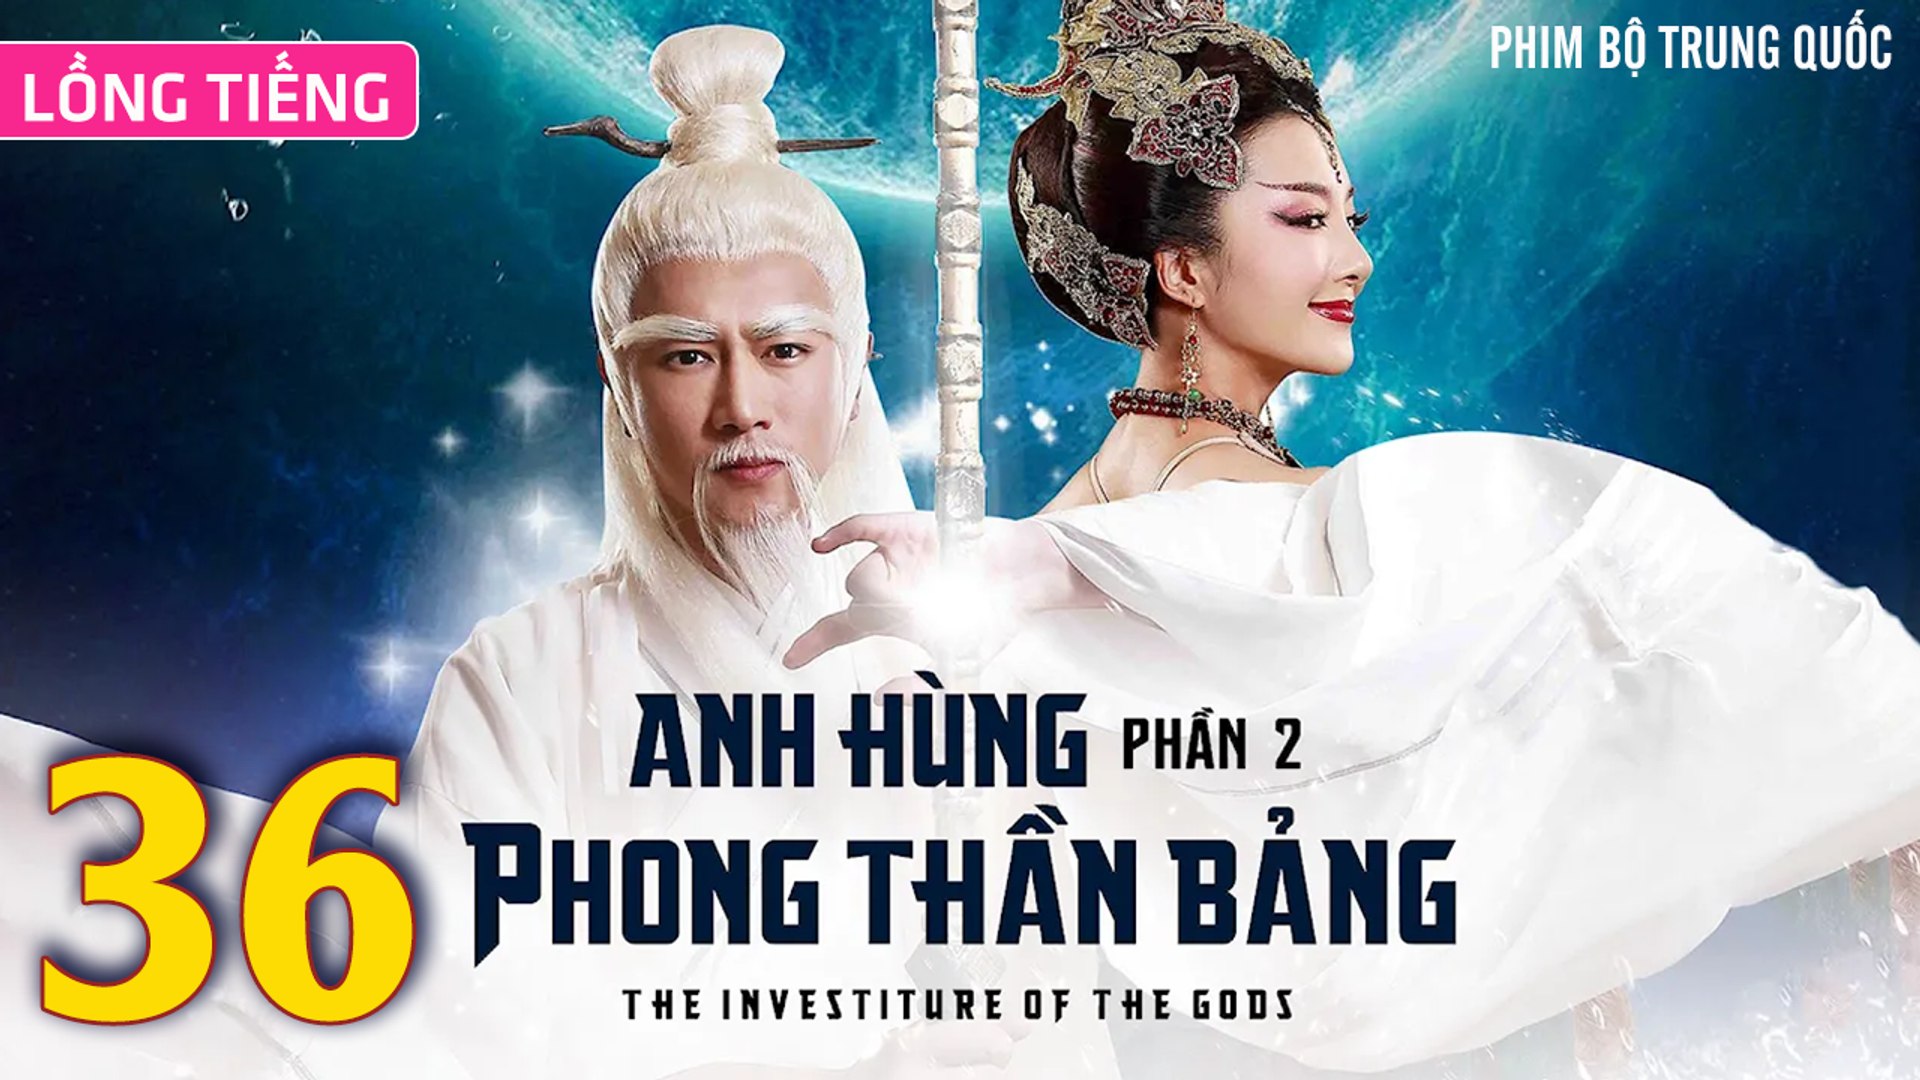 ⁣Phim Bộ Hay: ANH HÙNG PHONG THẦN BẢNG 2 - Tập 36 (Lồng Tiếng) | Phim Bộ Trung Quốc Hay Nhất 2023